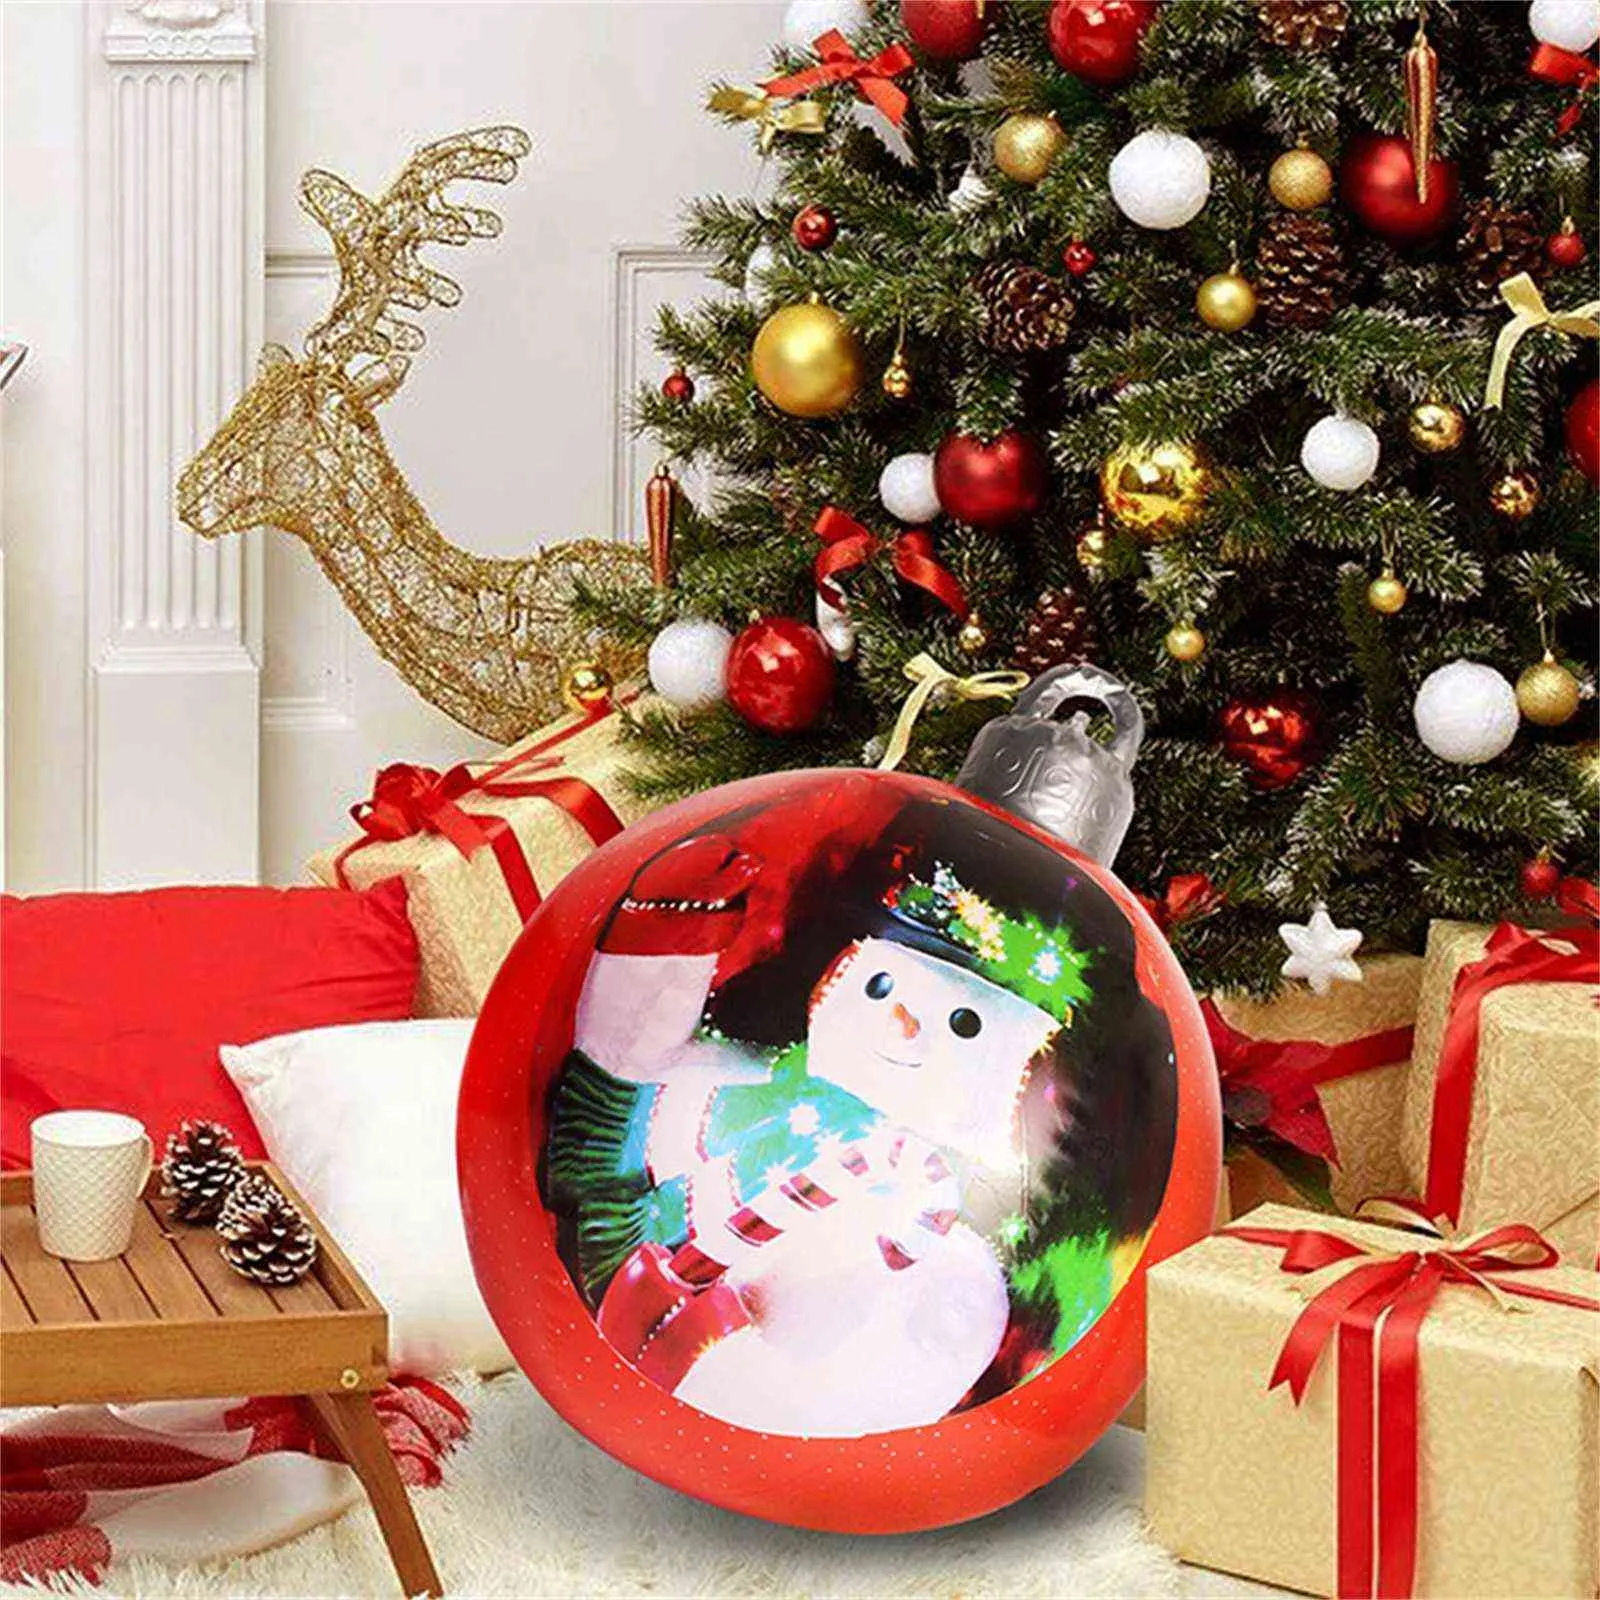 60Cm grandes boules de noël décorations d'arbre atmosphère extérieure boules gonflables jouets pour la maison cadeau boule ornement 21110577915112098986